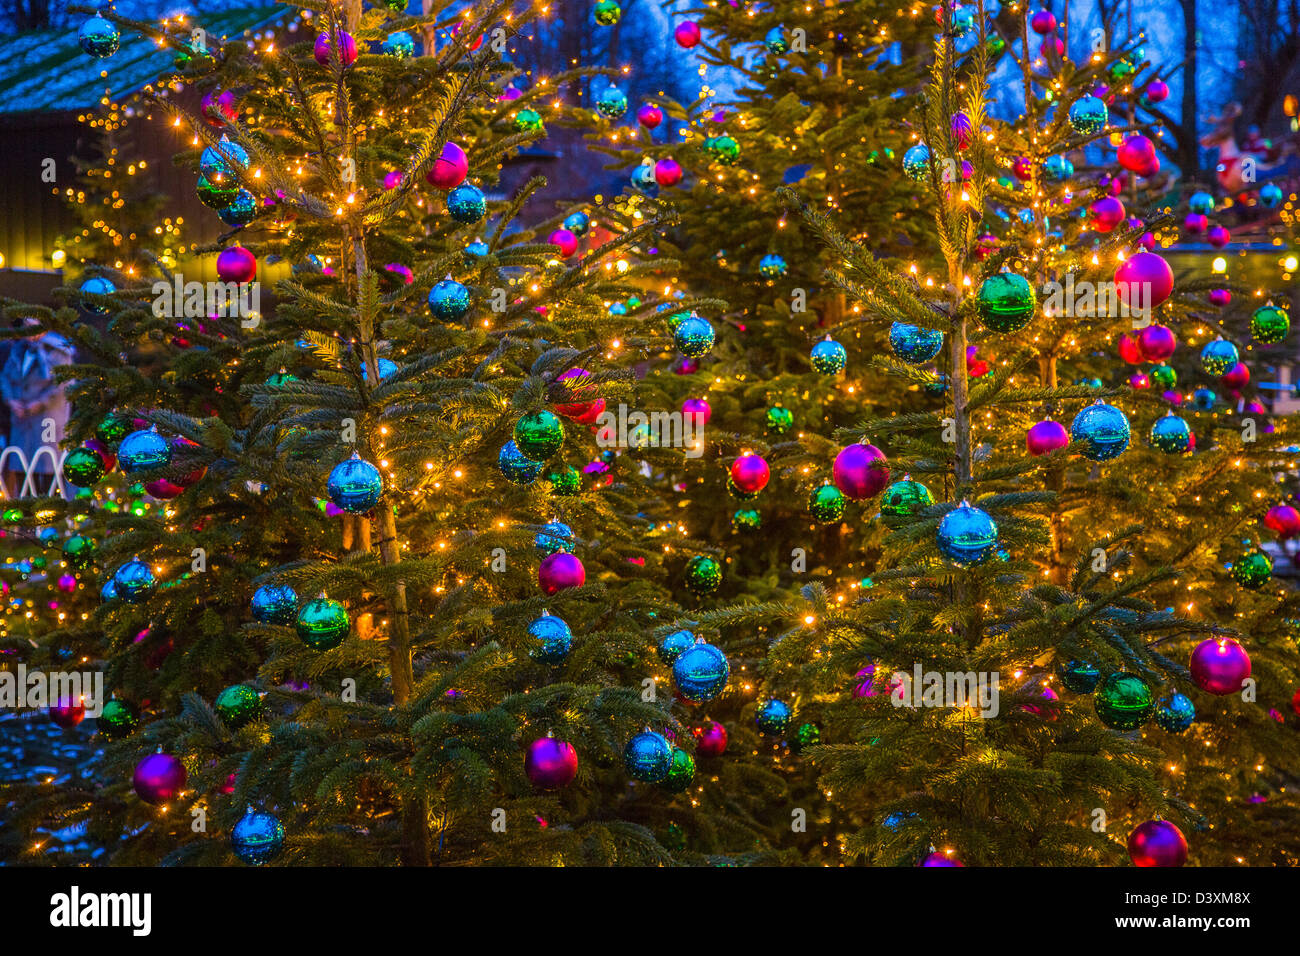 Los árboles de Navidad con bolas de Navidad. Foto de stock